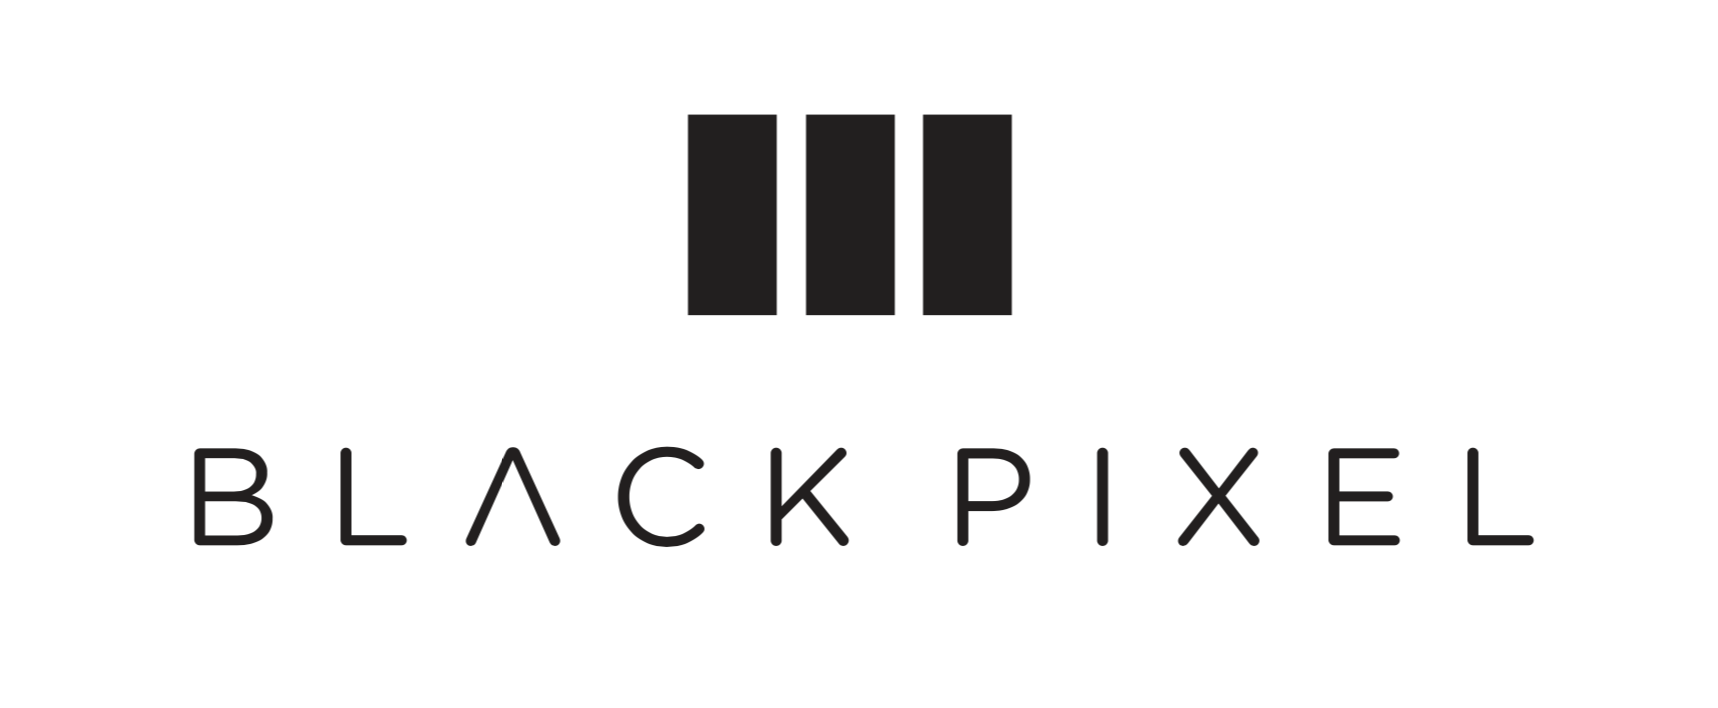 Black Pixel logo.png